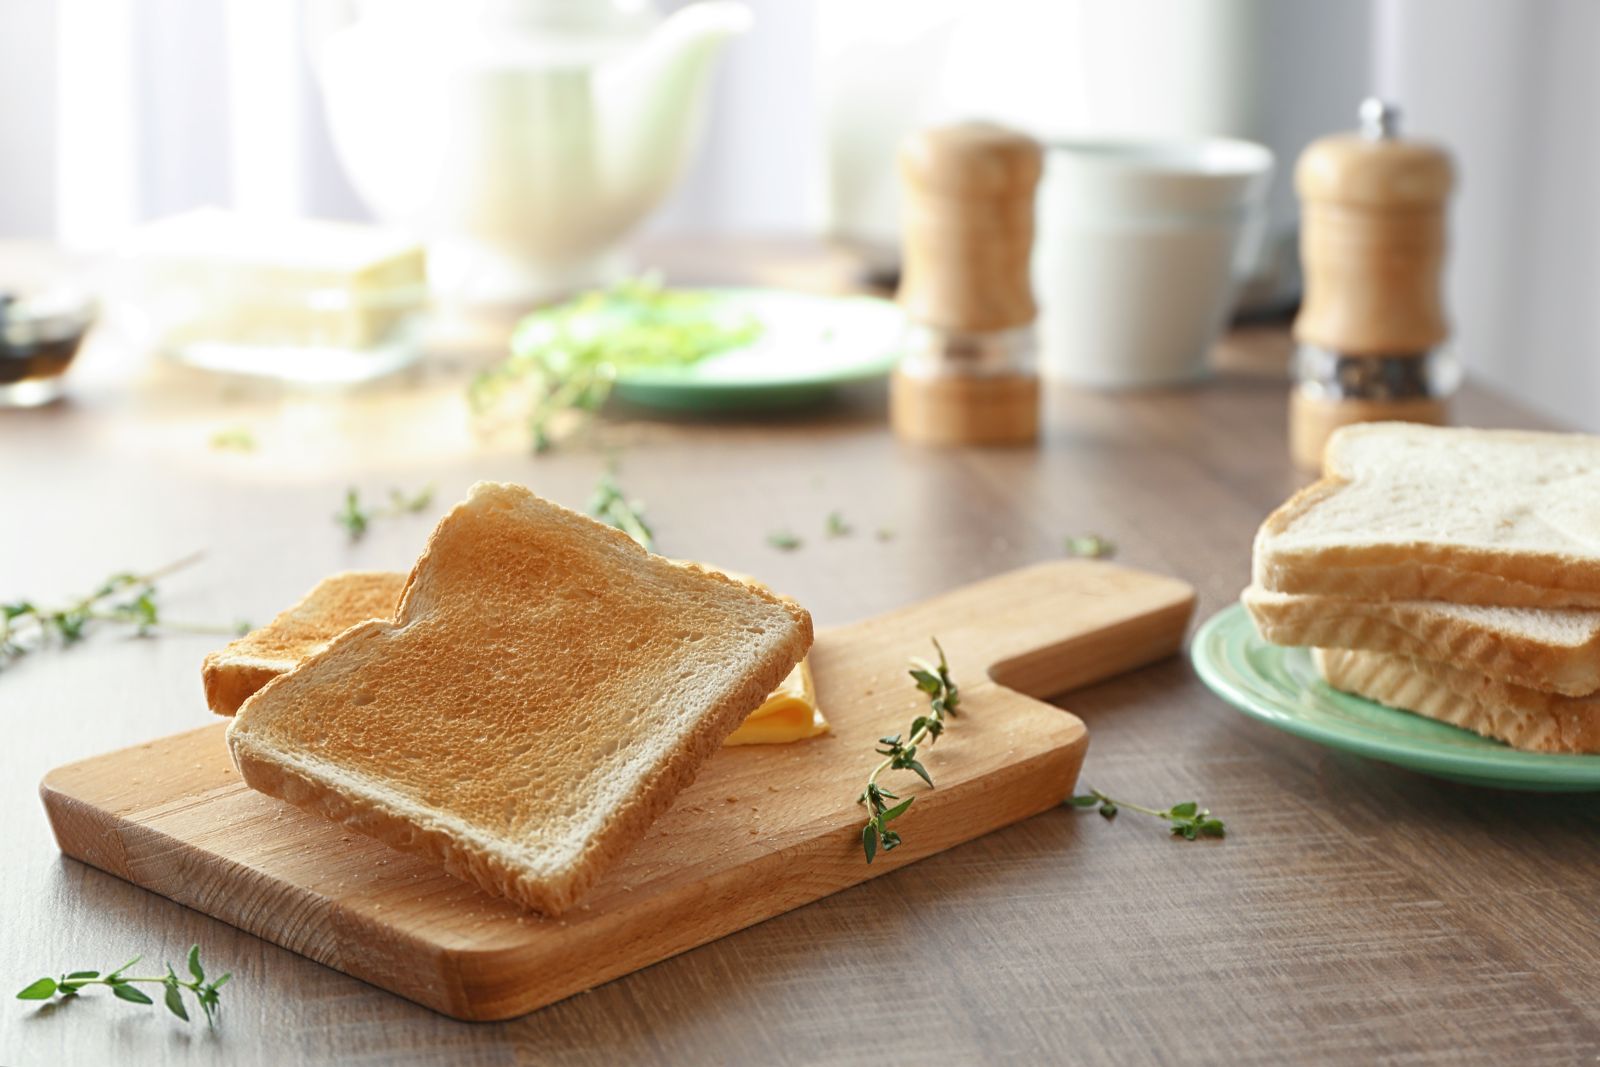 Trung bình cứ 100g bánh mì sandwich sẽ cung cấp 230 - 300 kcal